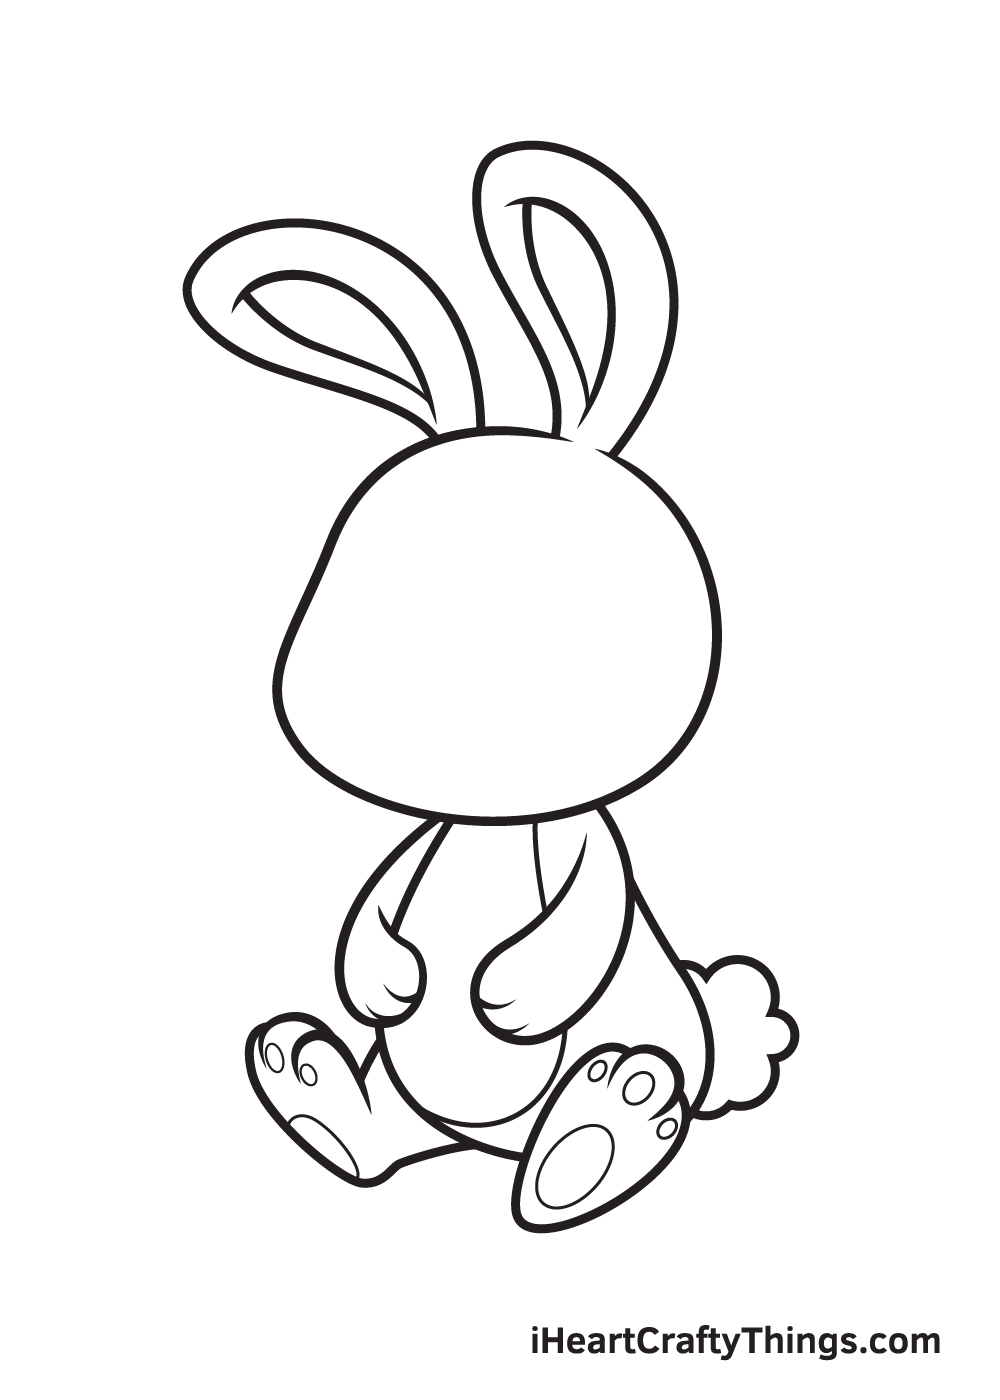 Hướng dẫn chi tiết cách vẽ con thỏ chibi dễ thương đơn giản nhất